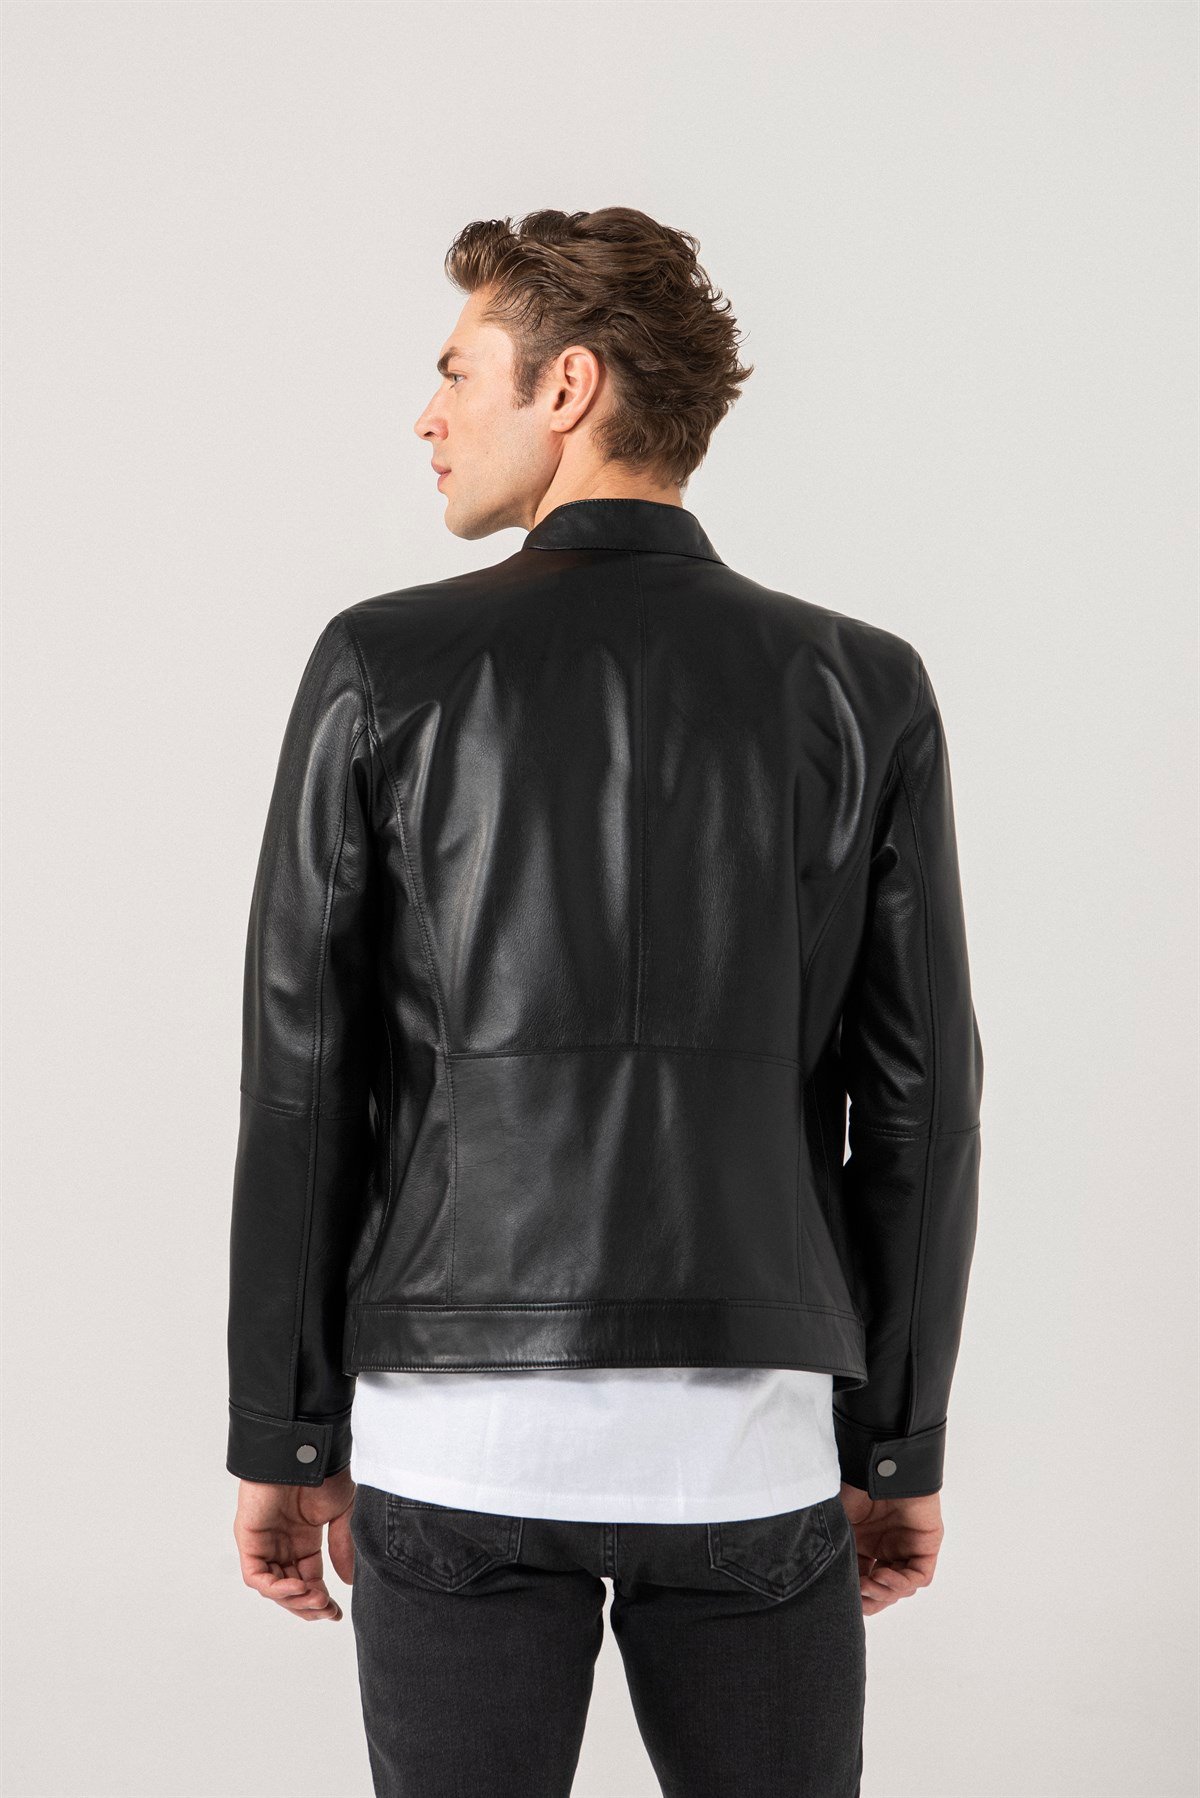 Christian Men Sports Black Leather Jacket Black Noble | Luxury